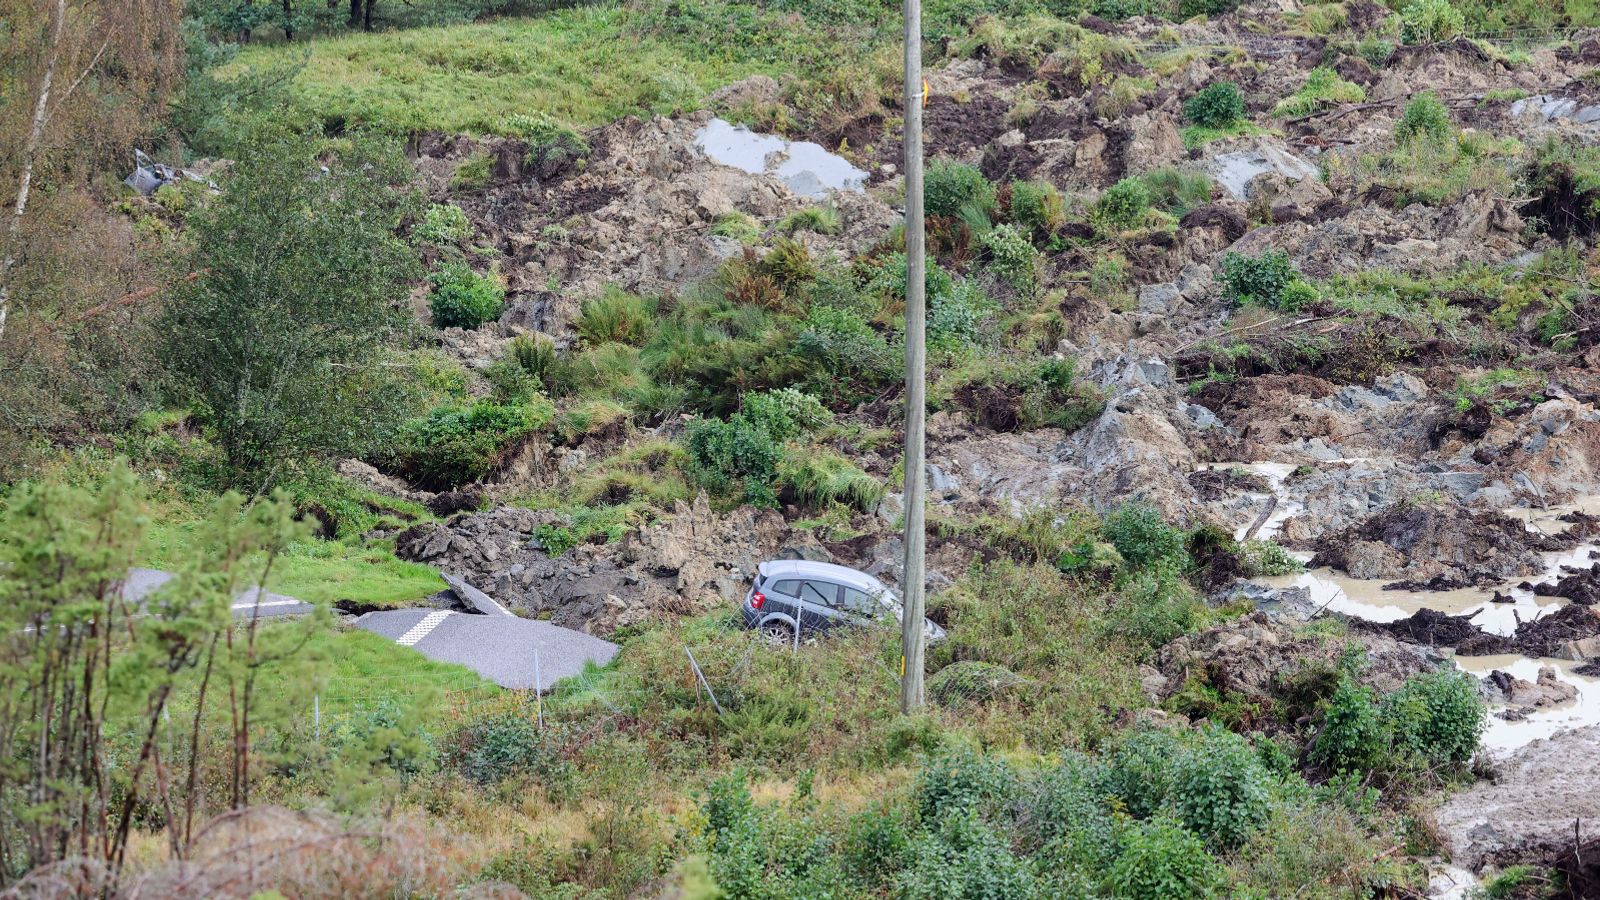 Sweden: Chunk of motorway collapses in landslide - leaving three in hospital